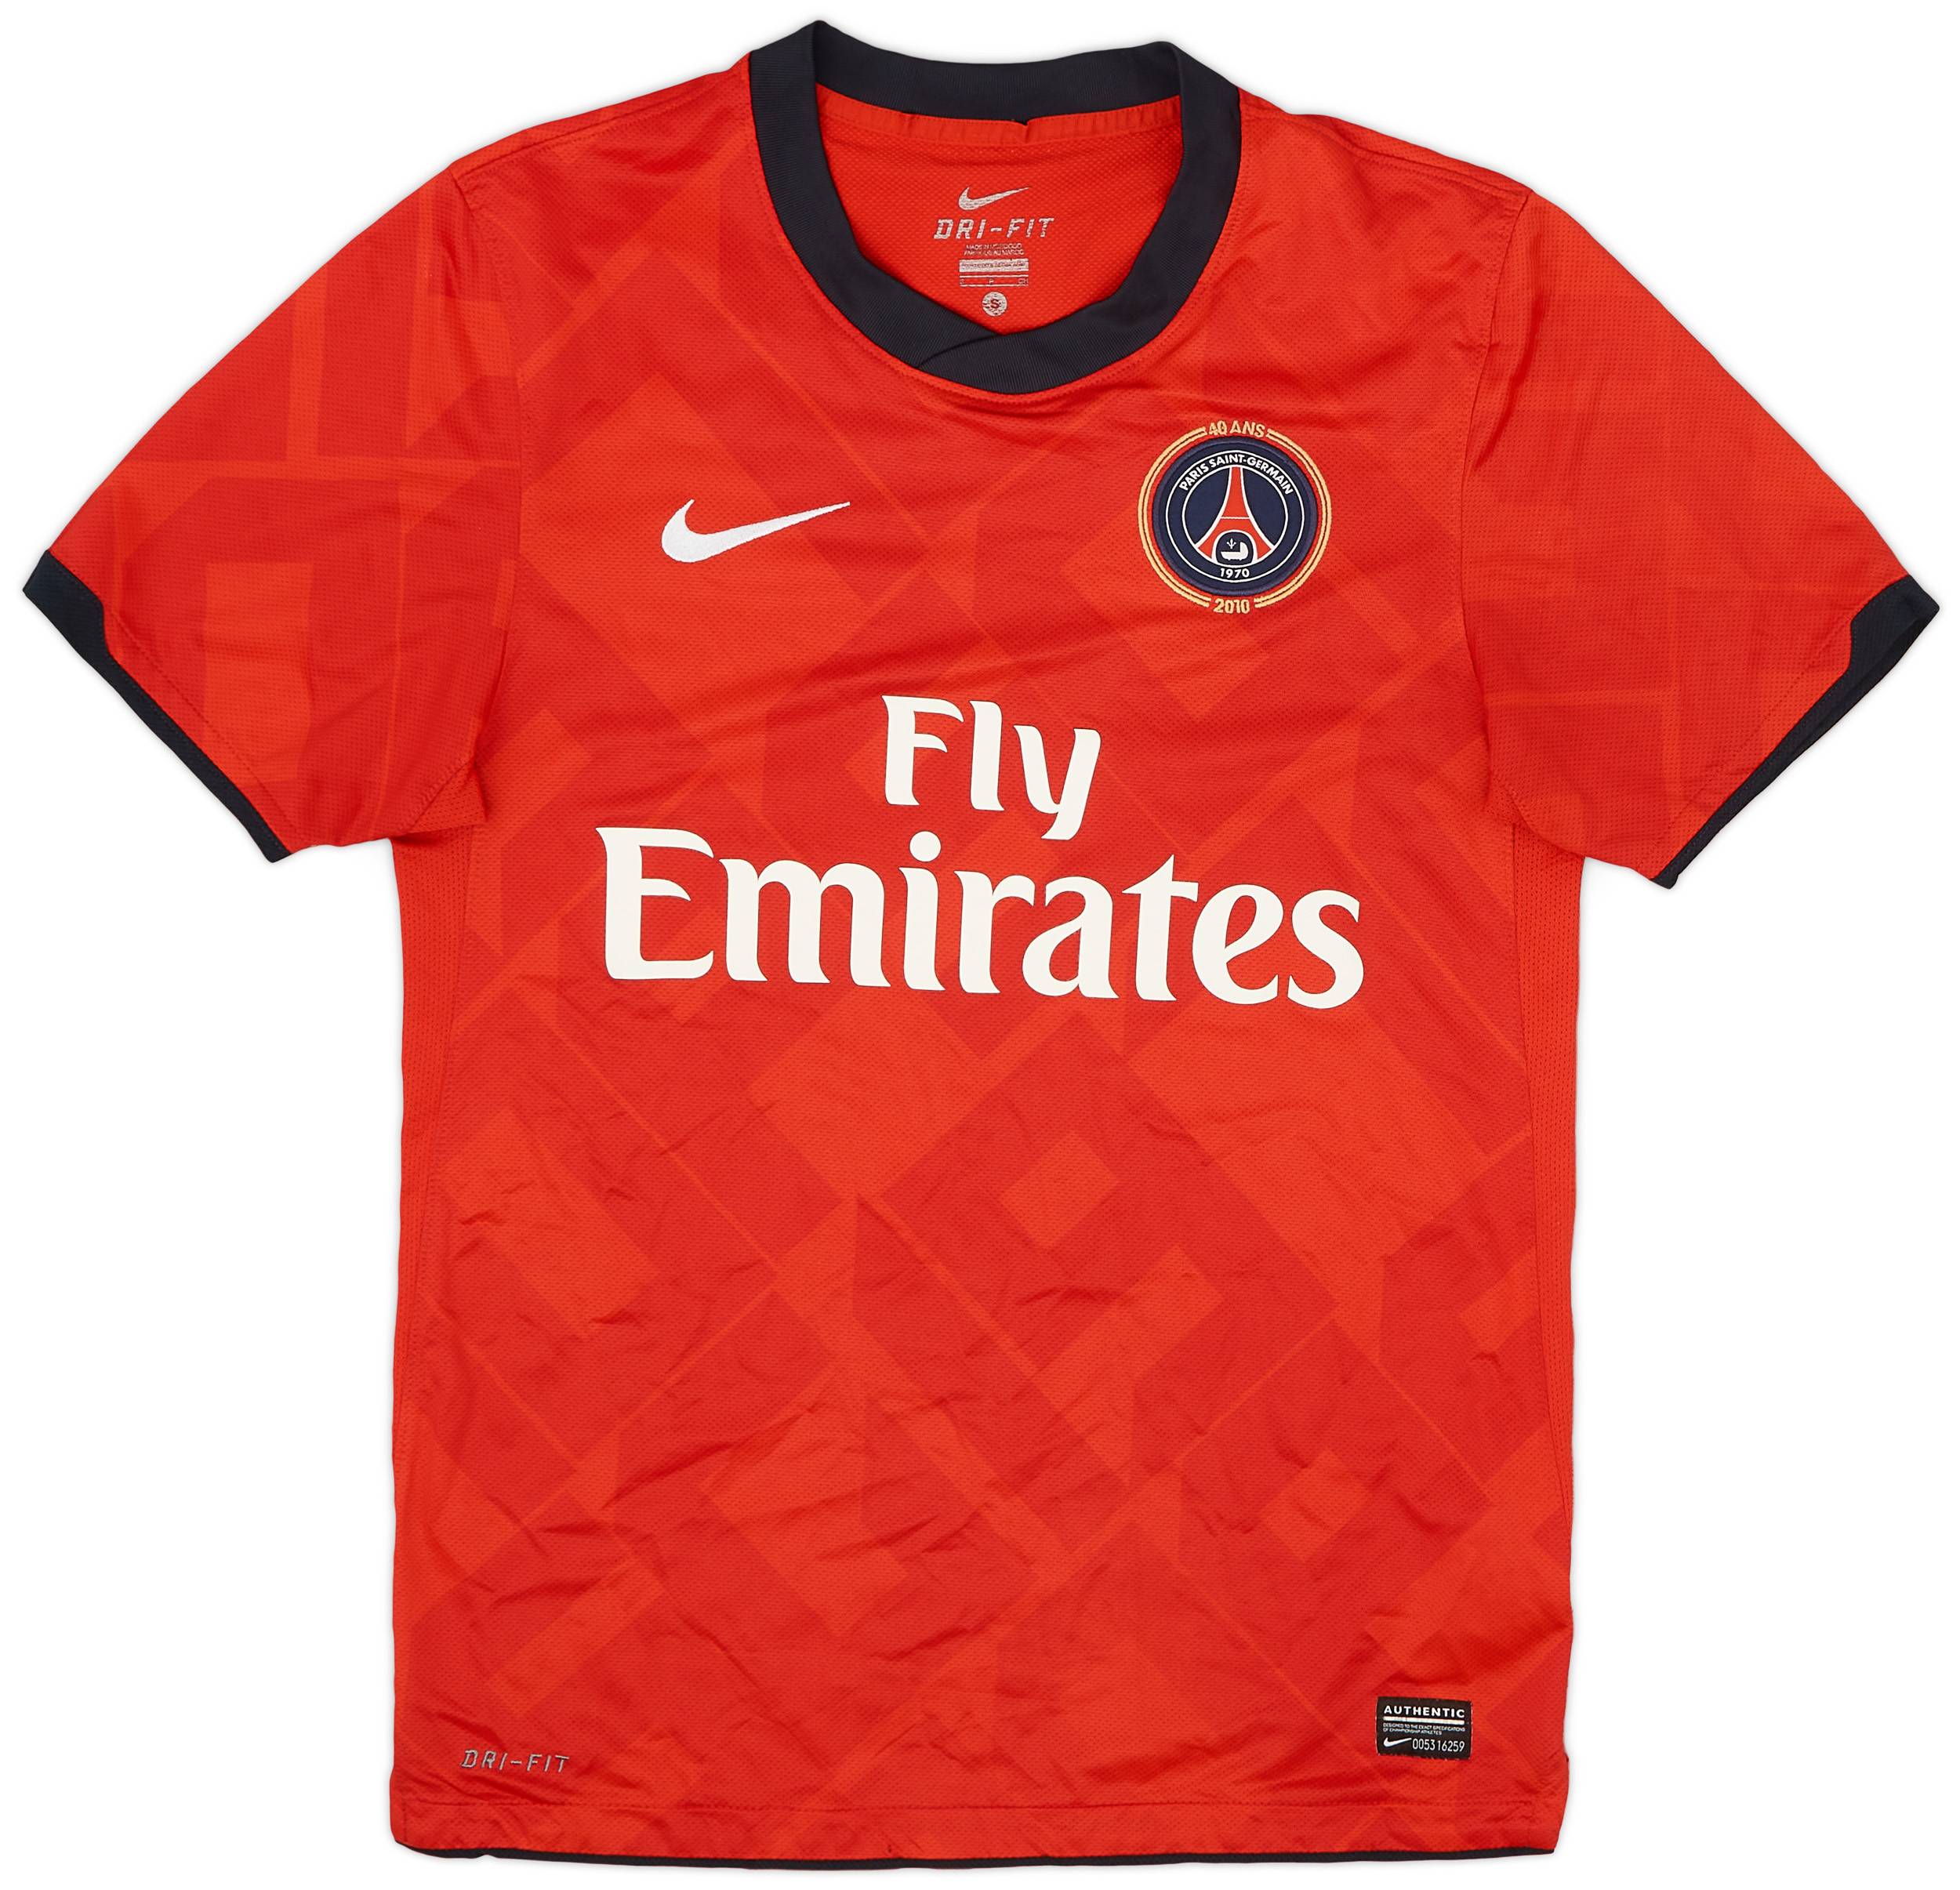 2010-12 Paris Saint-Germain '40 ANS' Home/Third Shirt - 7/10 - (S)